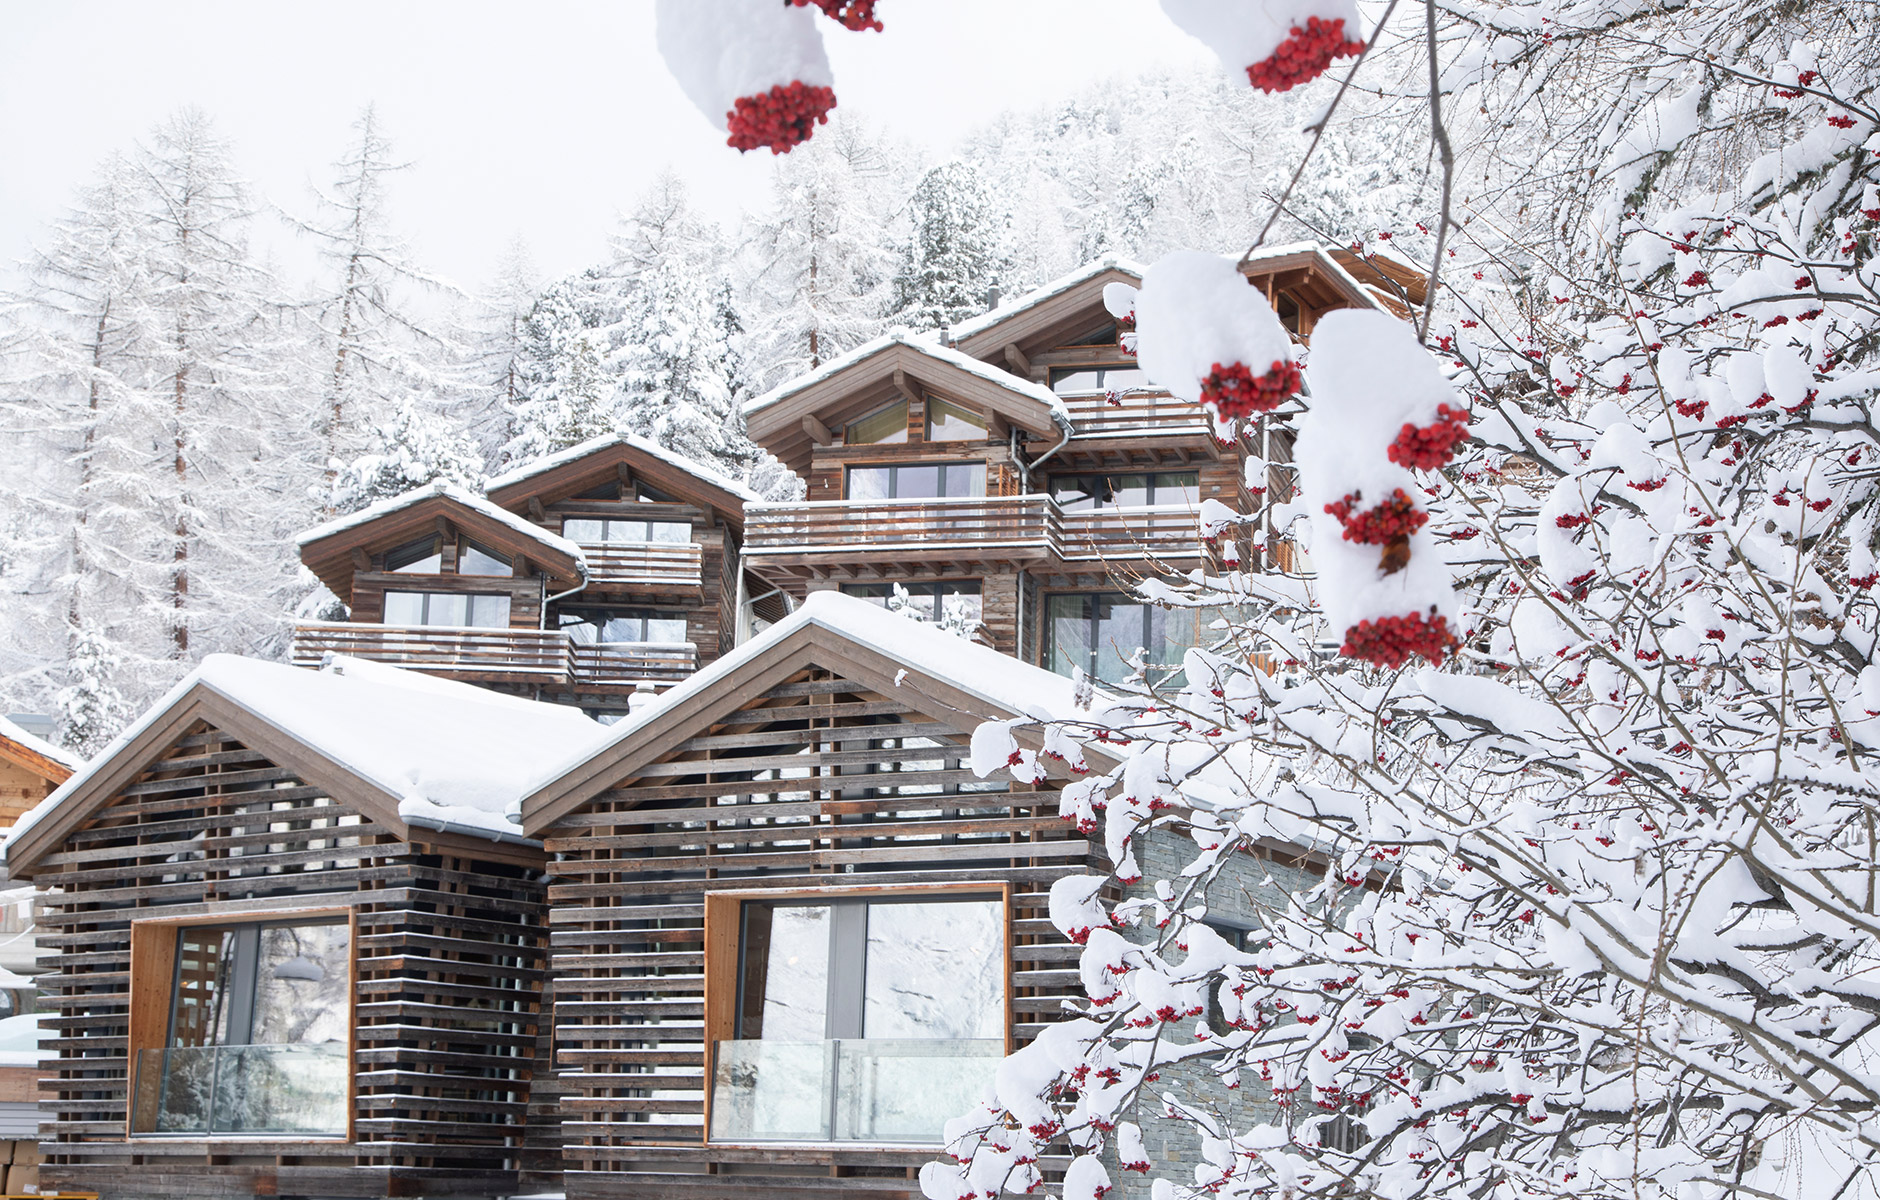 Holzhäuser des Hotels an winterlichem Berghang